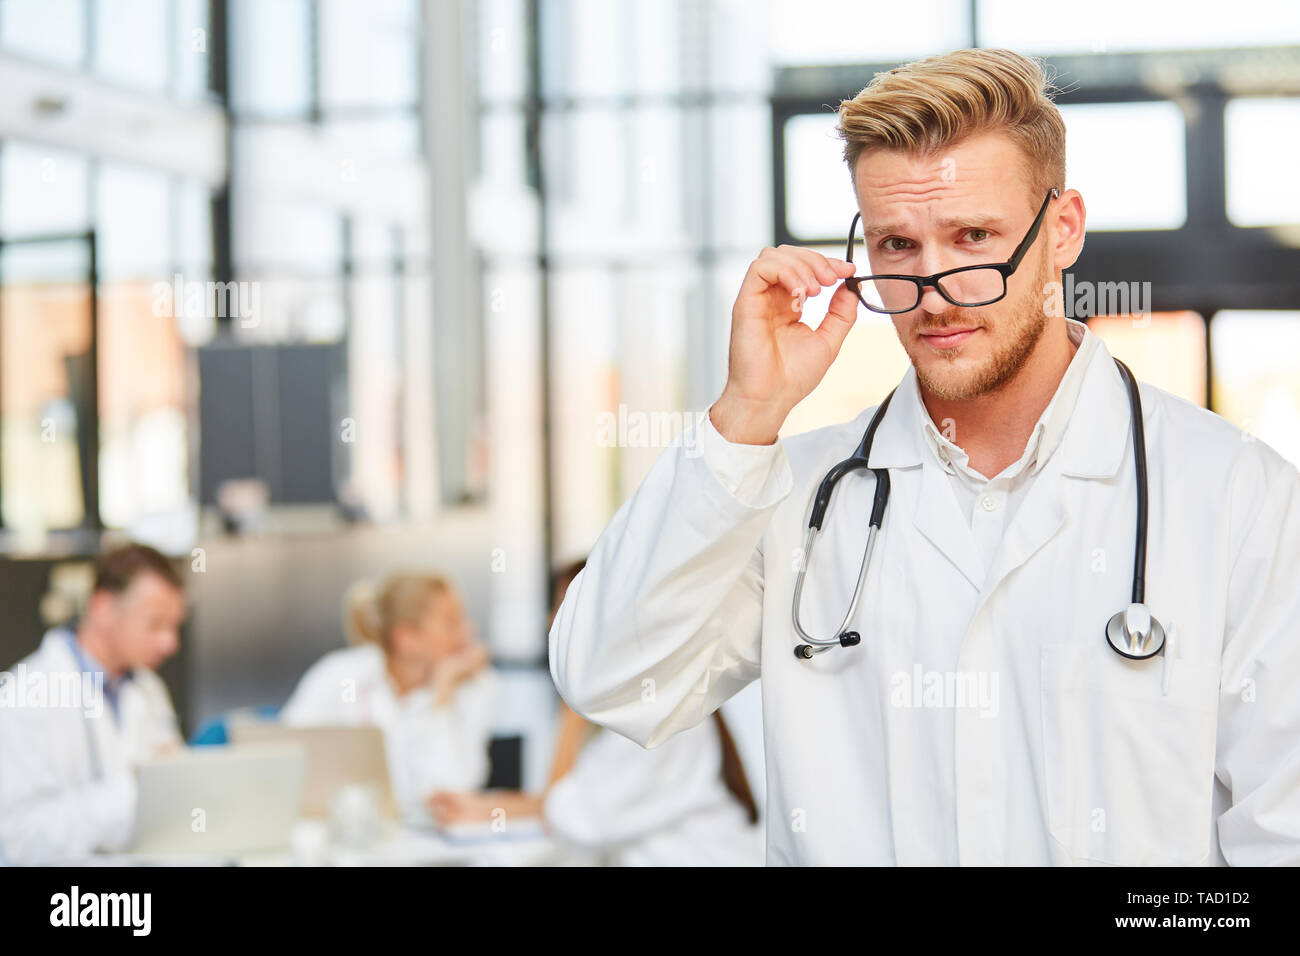 Fiero Uomo con occhiali come un assistente medico in formazione presso l'ospedale di riunione Foto Stock